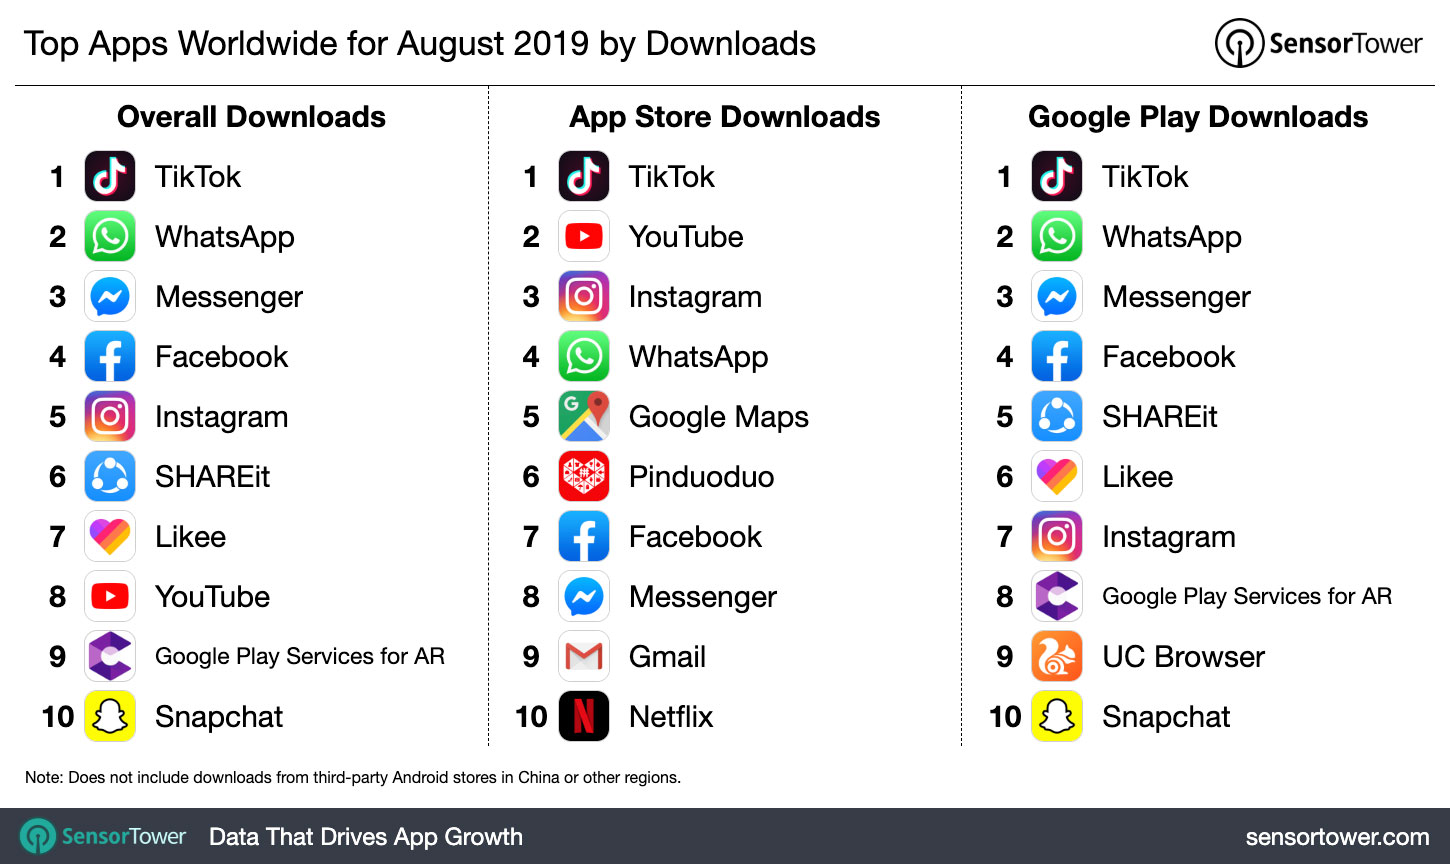 Топ-10 самых скачиваемых приложений на Android и iOS за август 2019 года